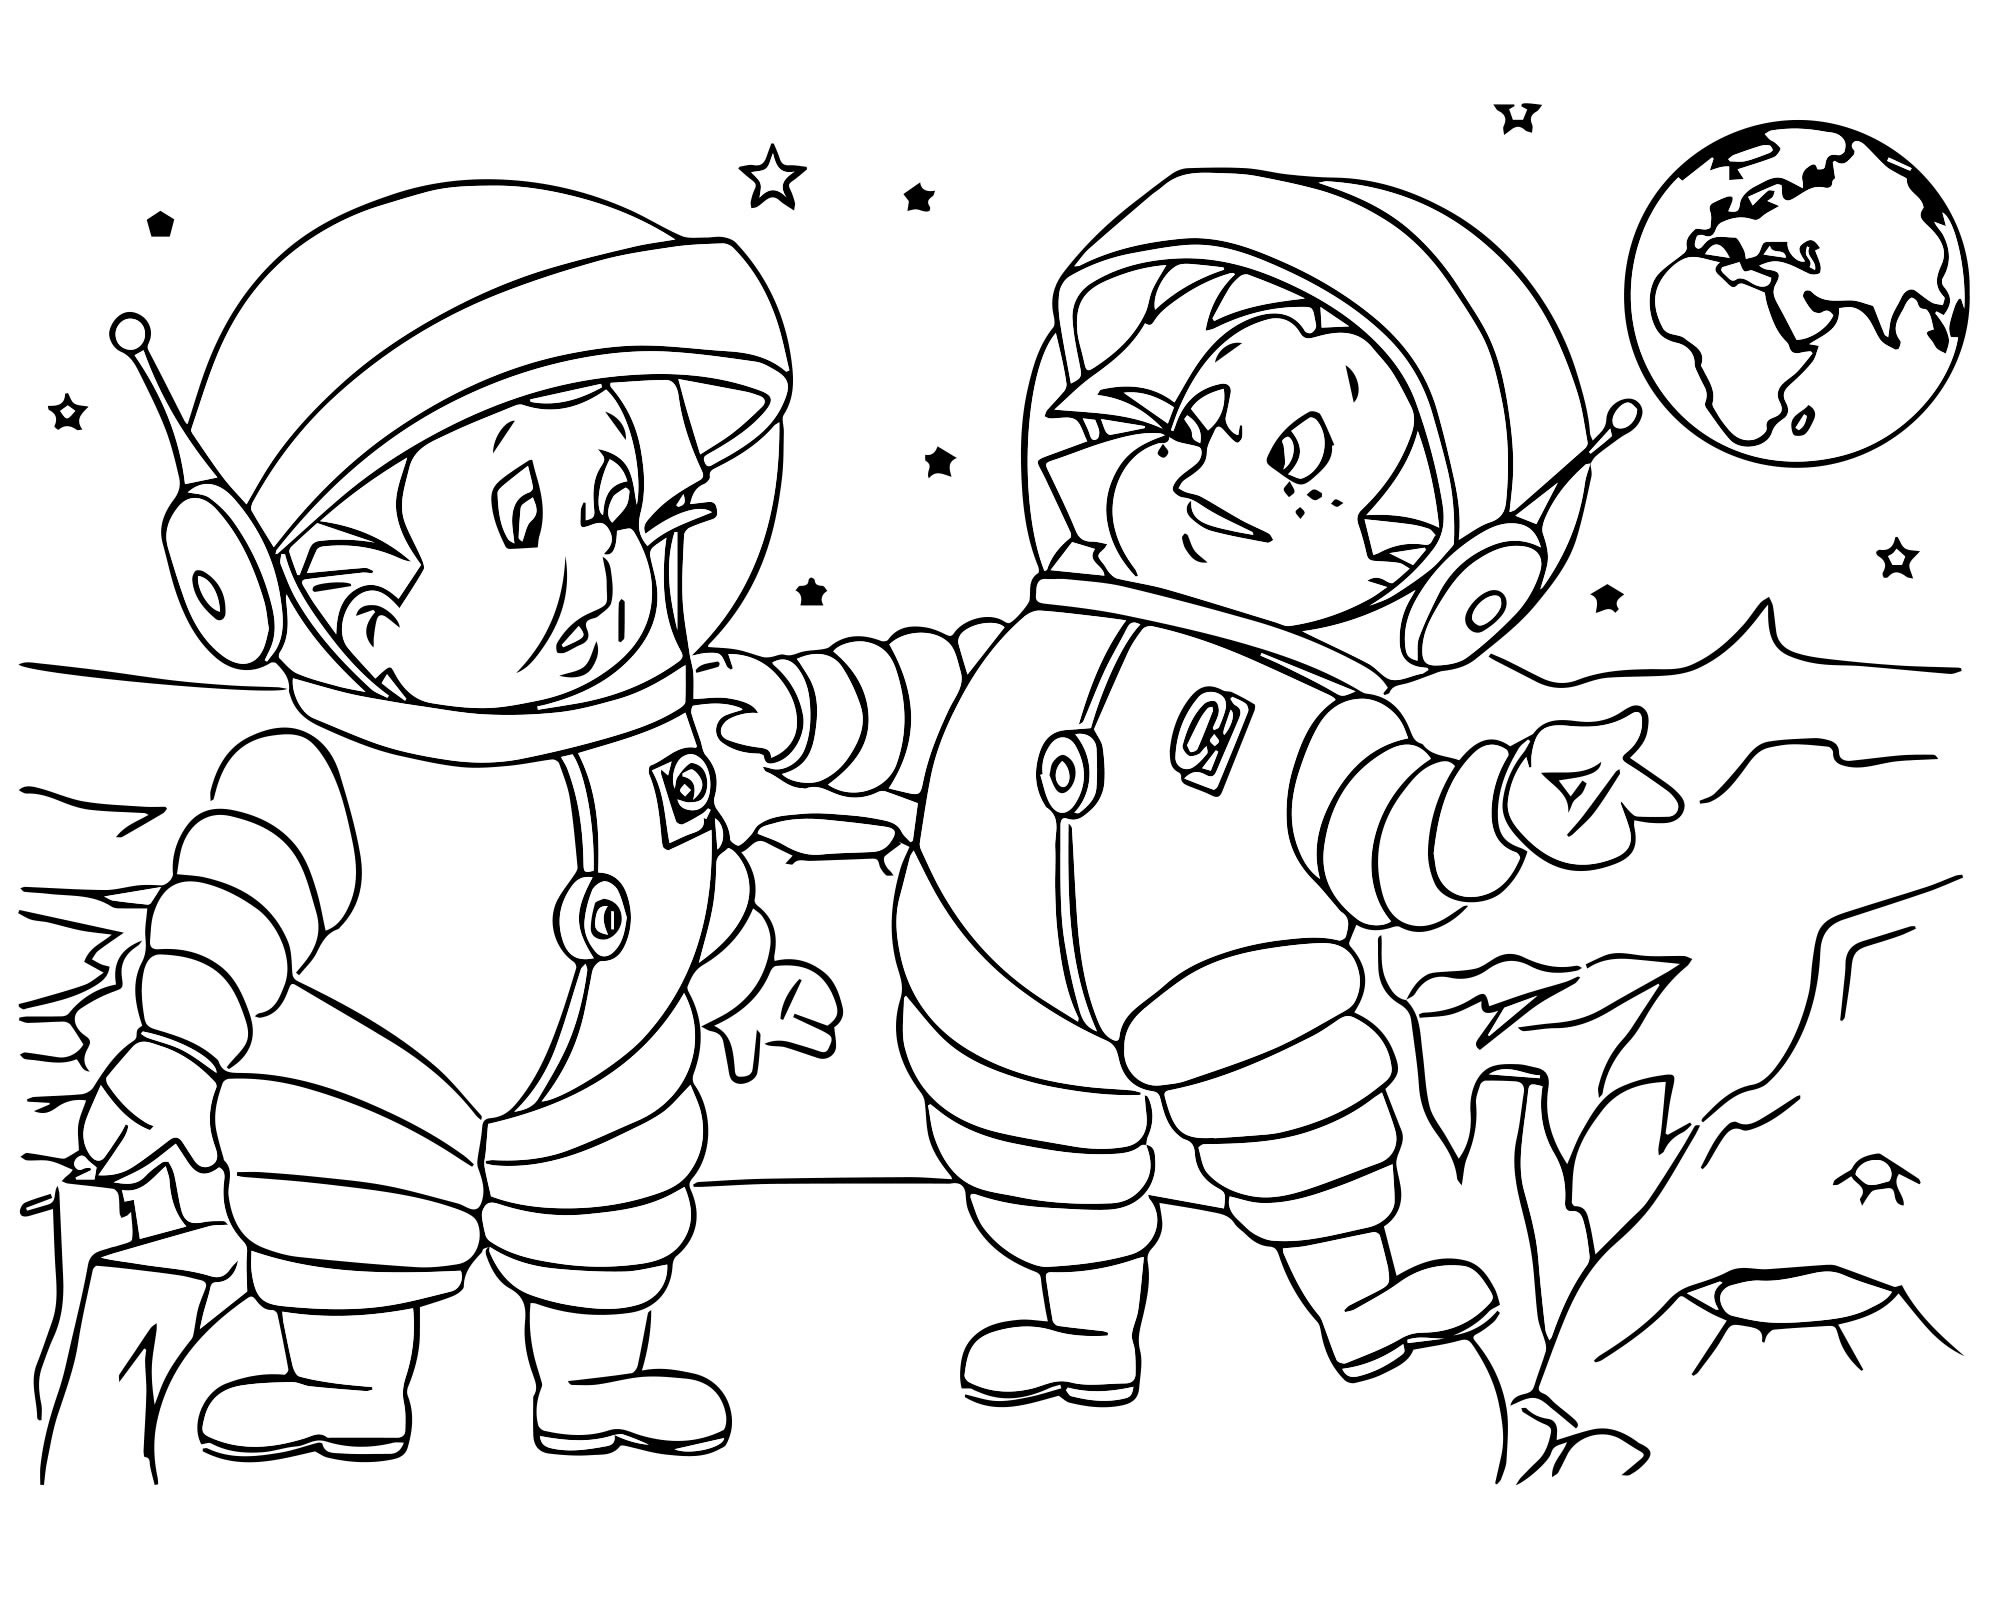 Раскраски к дню космонавтики для детей распечатать. Незнайка на Луне раскраска для детей. Раскраска. В космосе. Космос раскраска для детей. Раскраска день космонавтики для детей.